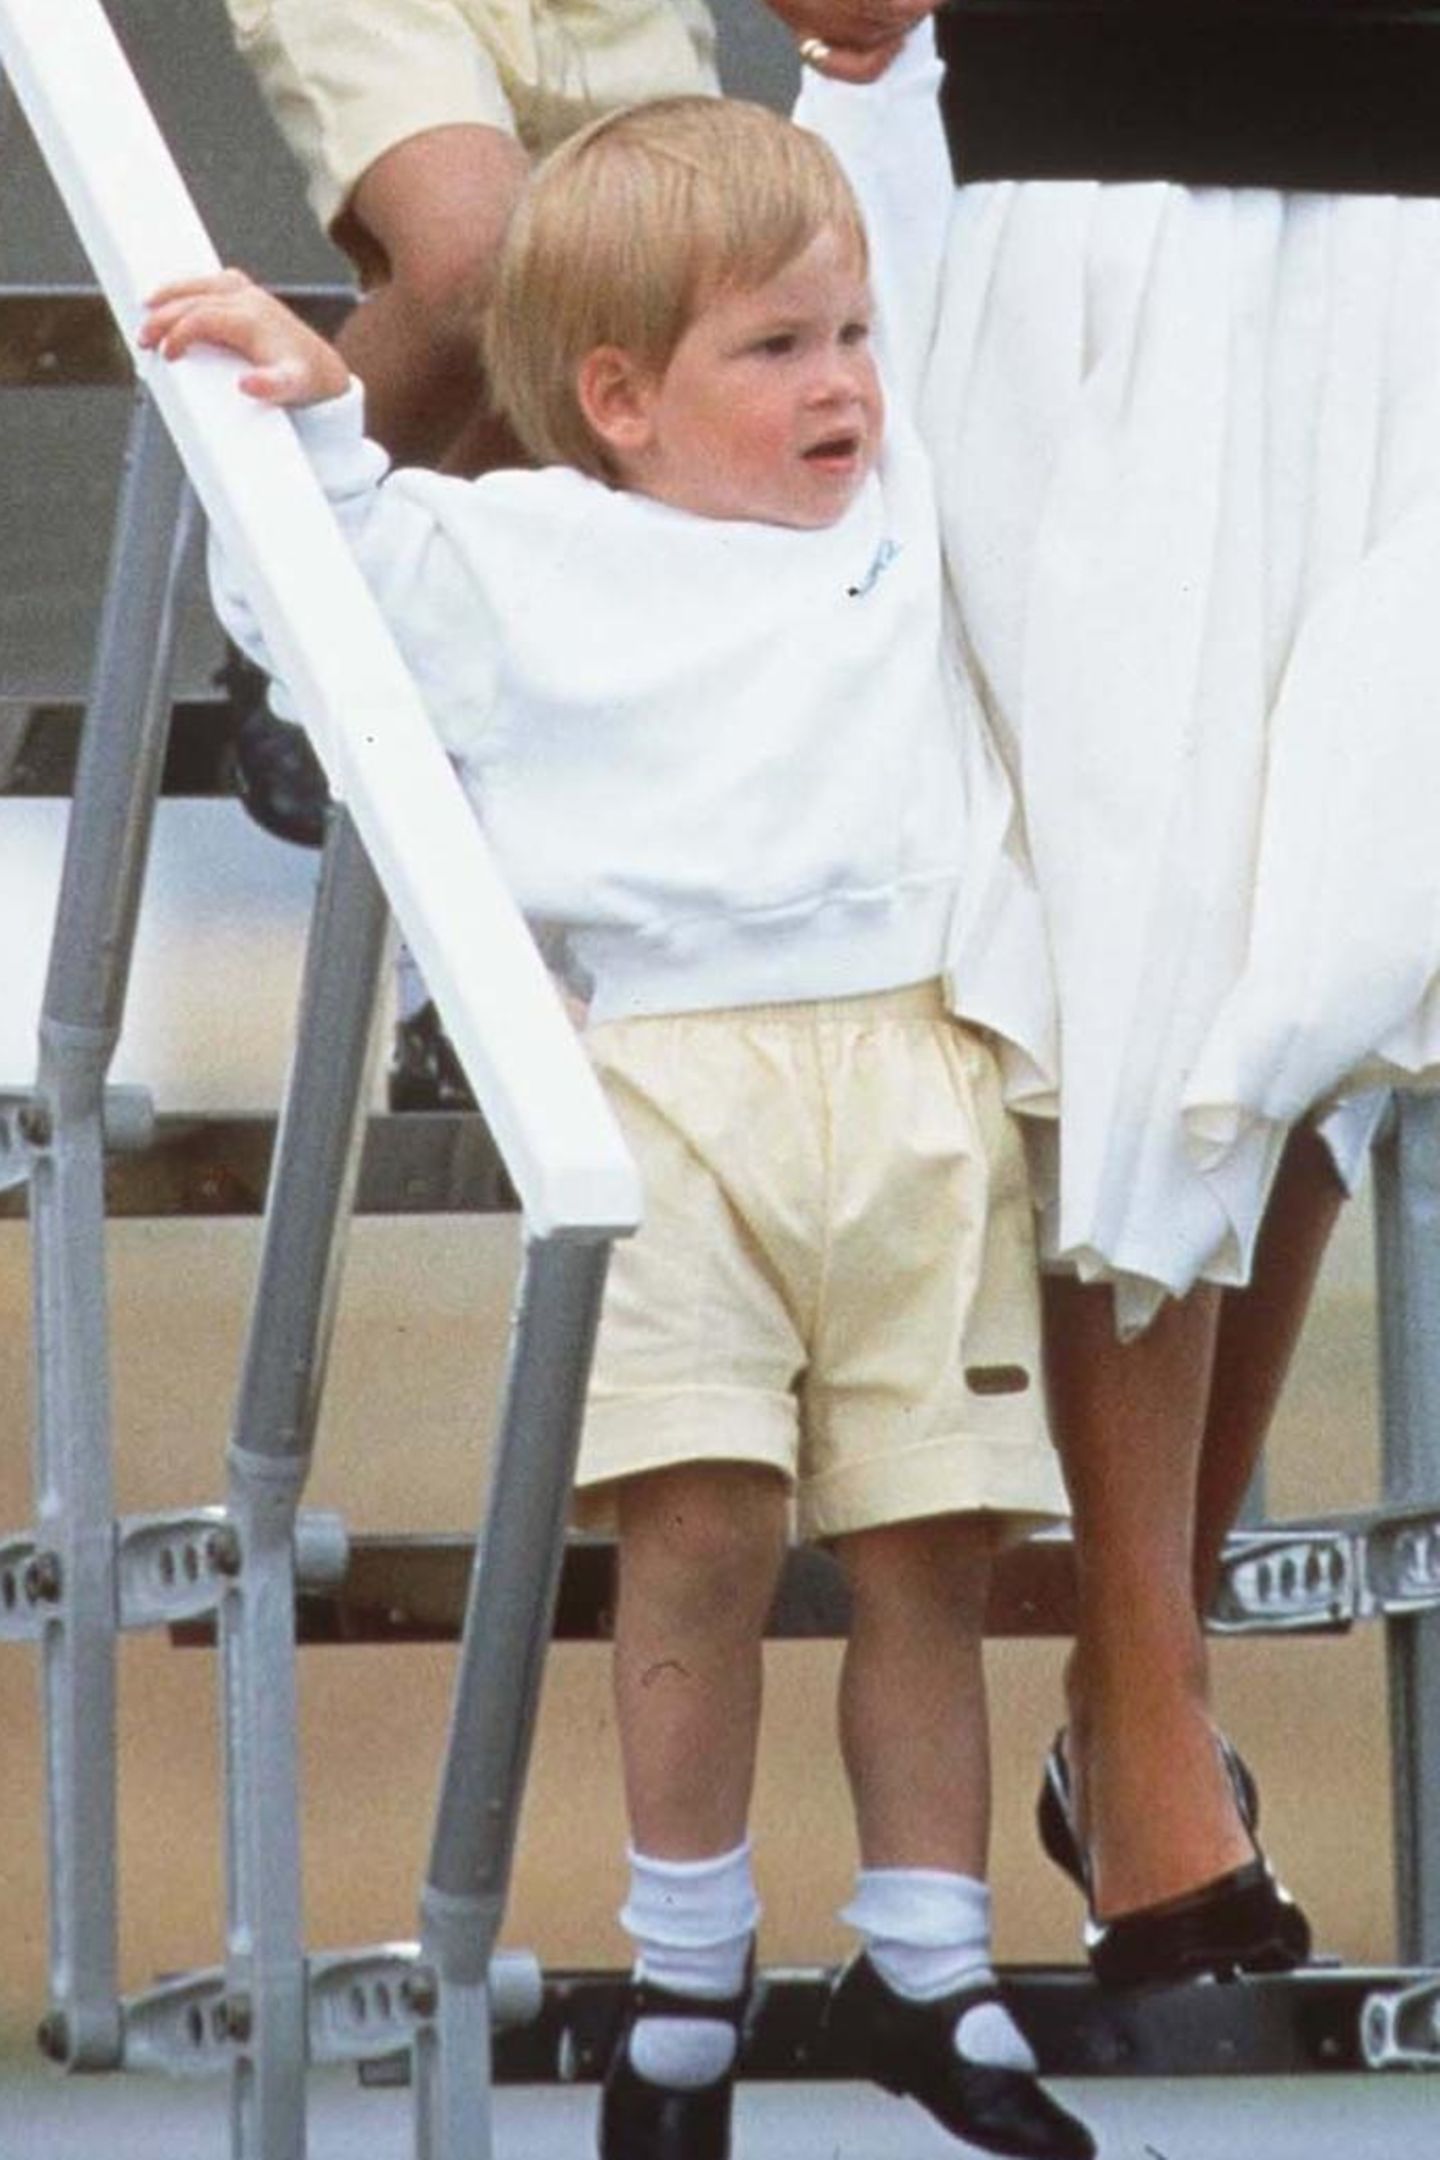 1986  Als königlicher Knirps ist Prinz Harry noch lange nicht der royale Rotschopf, der er heute ist. Damals ist sein Haar noch viel blonder.